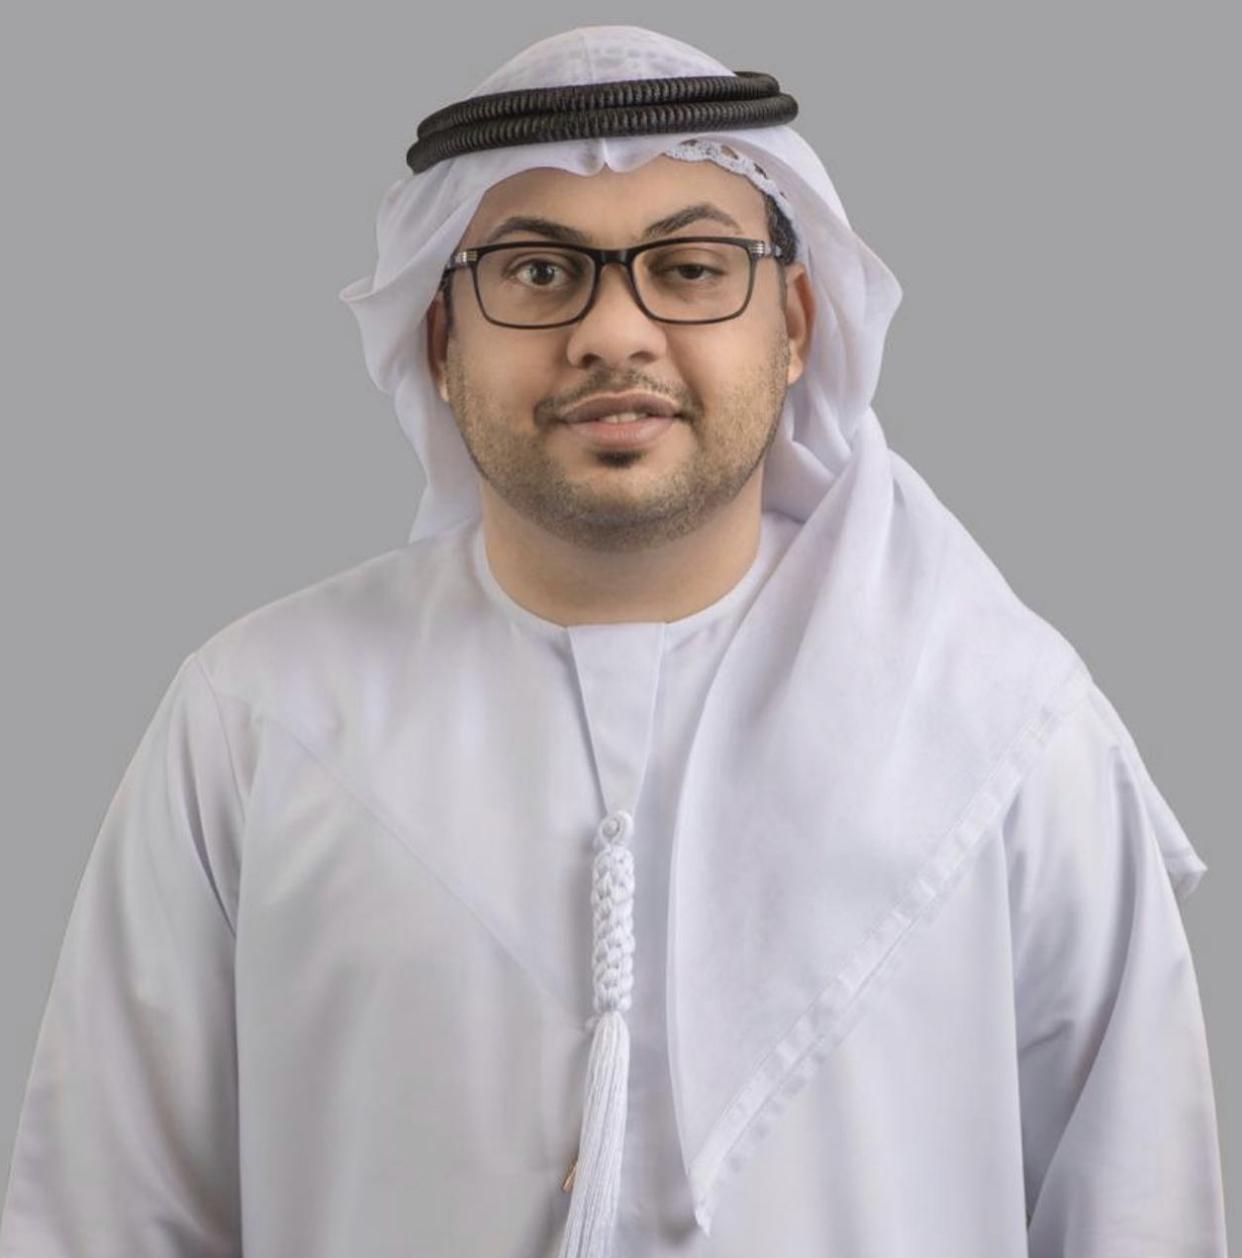 سعيد الشرقي: رؤية القيادة الرشيدة مكنت الإمارات من إحراز مراكز عالمية في مؤشرات التنافسية 2021